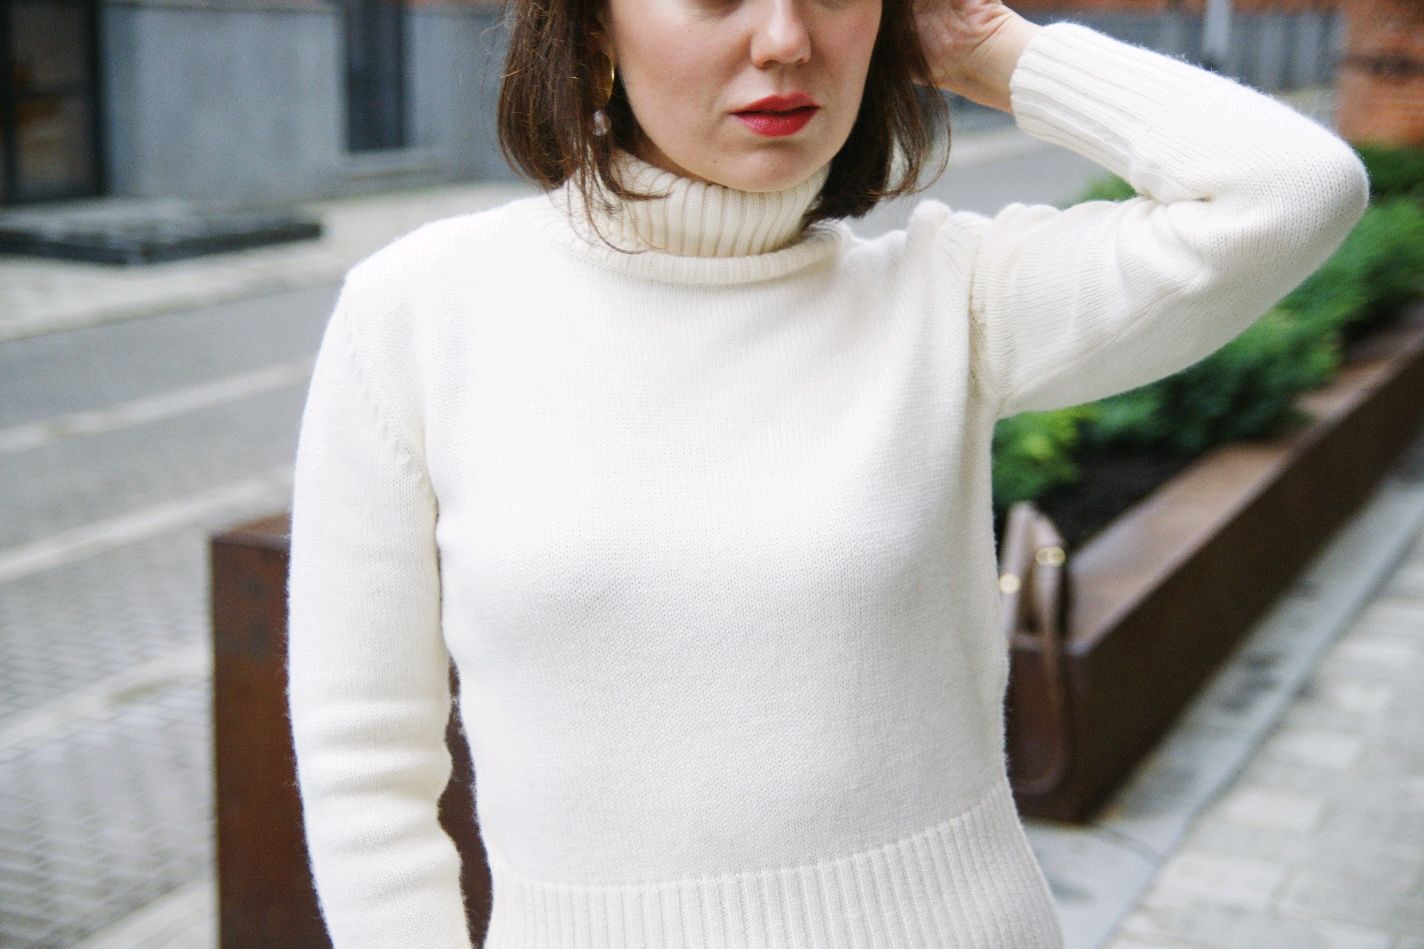 Свитер с высоким горлом. Бадлон Эмма Уотсон. Шерстяной белый свитер 2020 Зара. Свитер с горлом. Белый свитер.